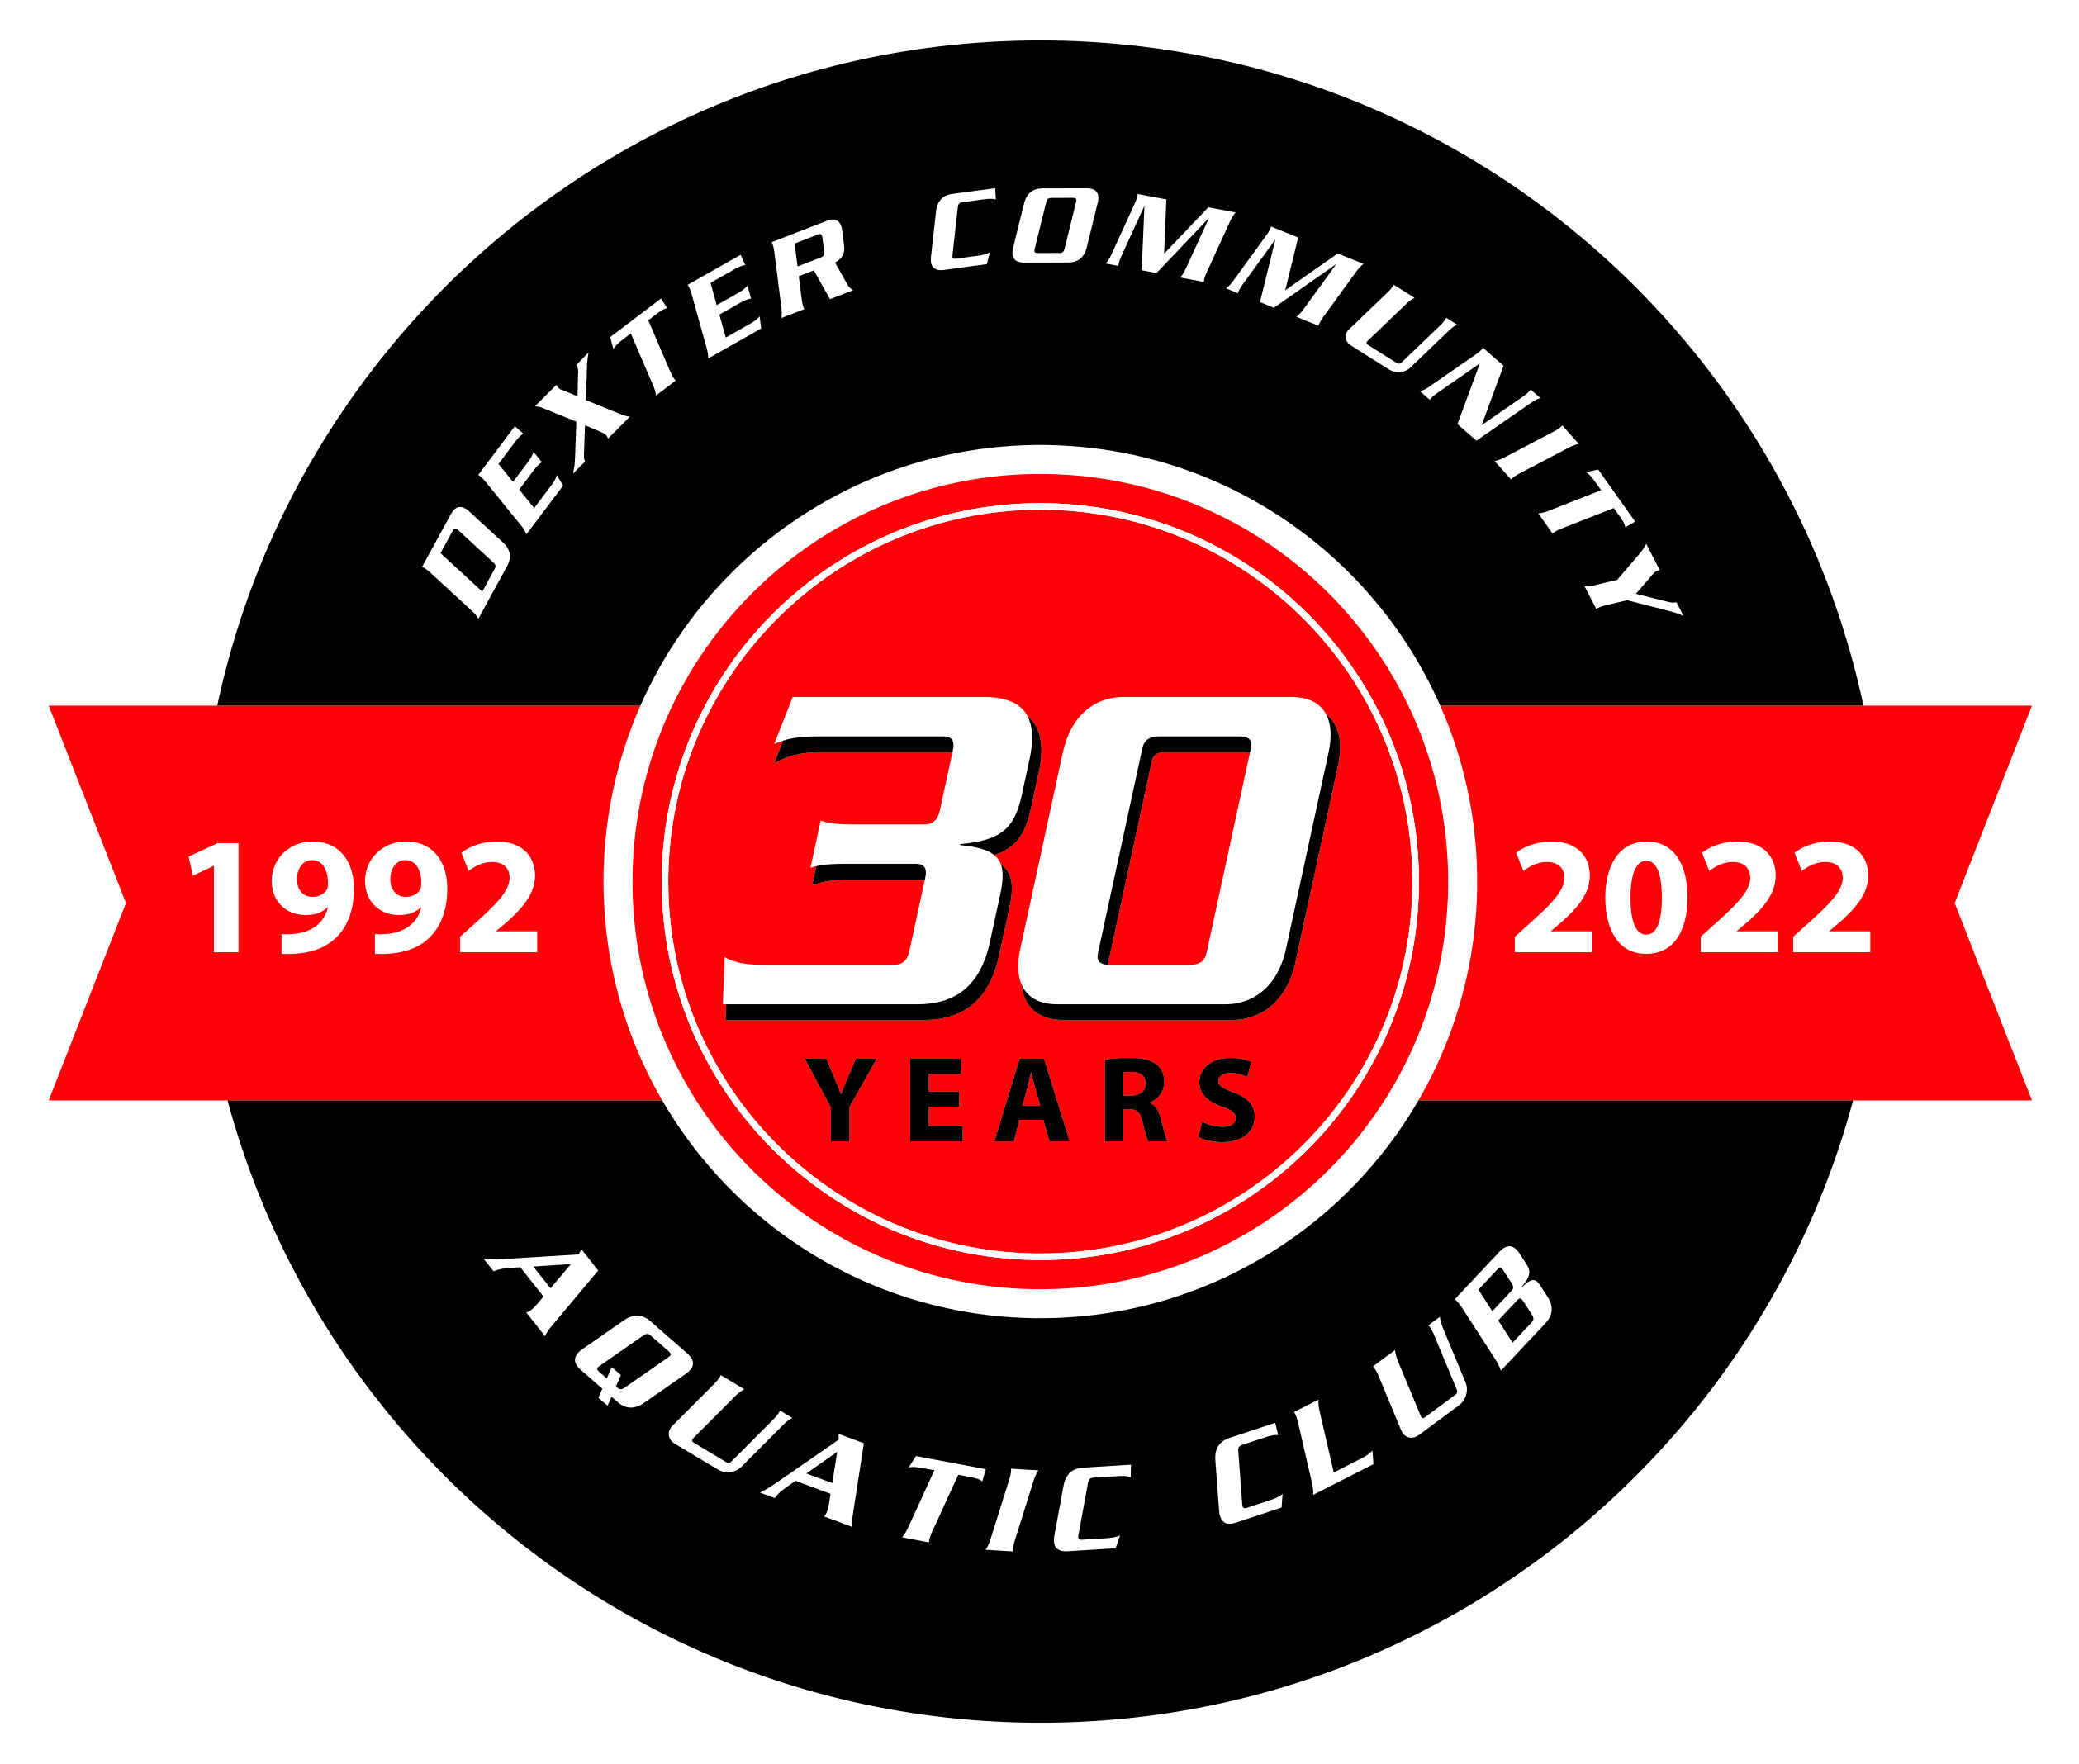 Dexter Community Aquatic Club